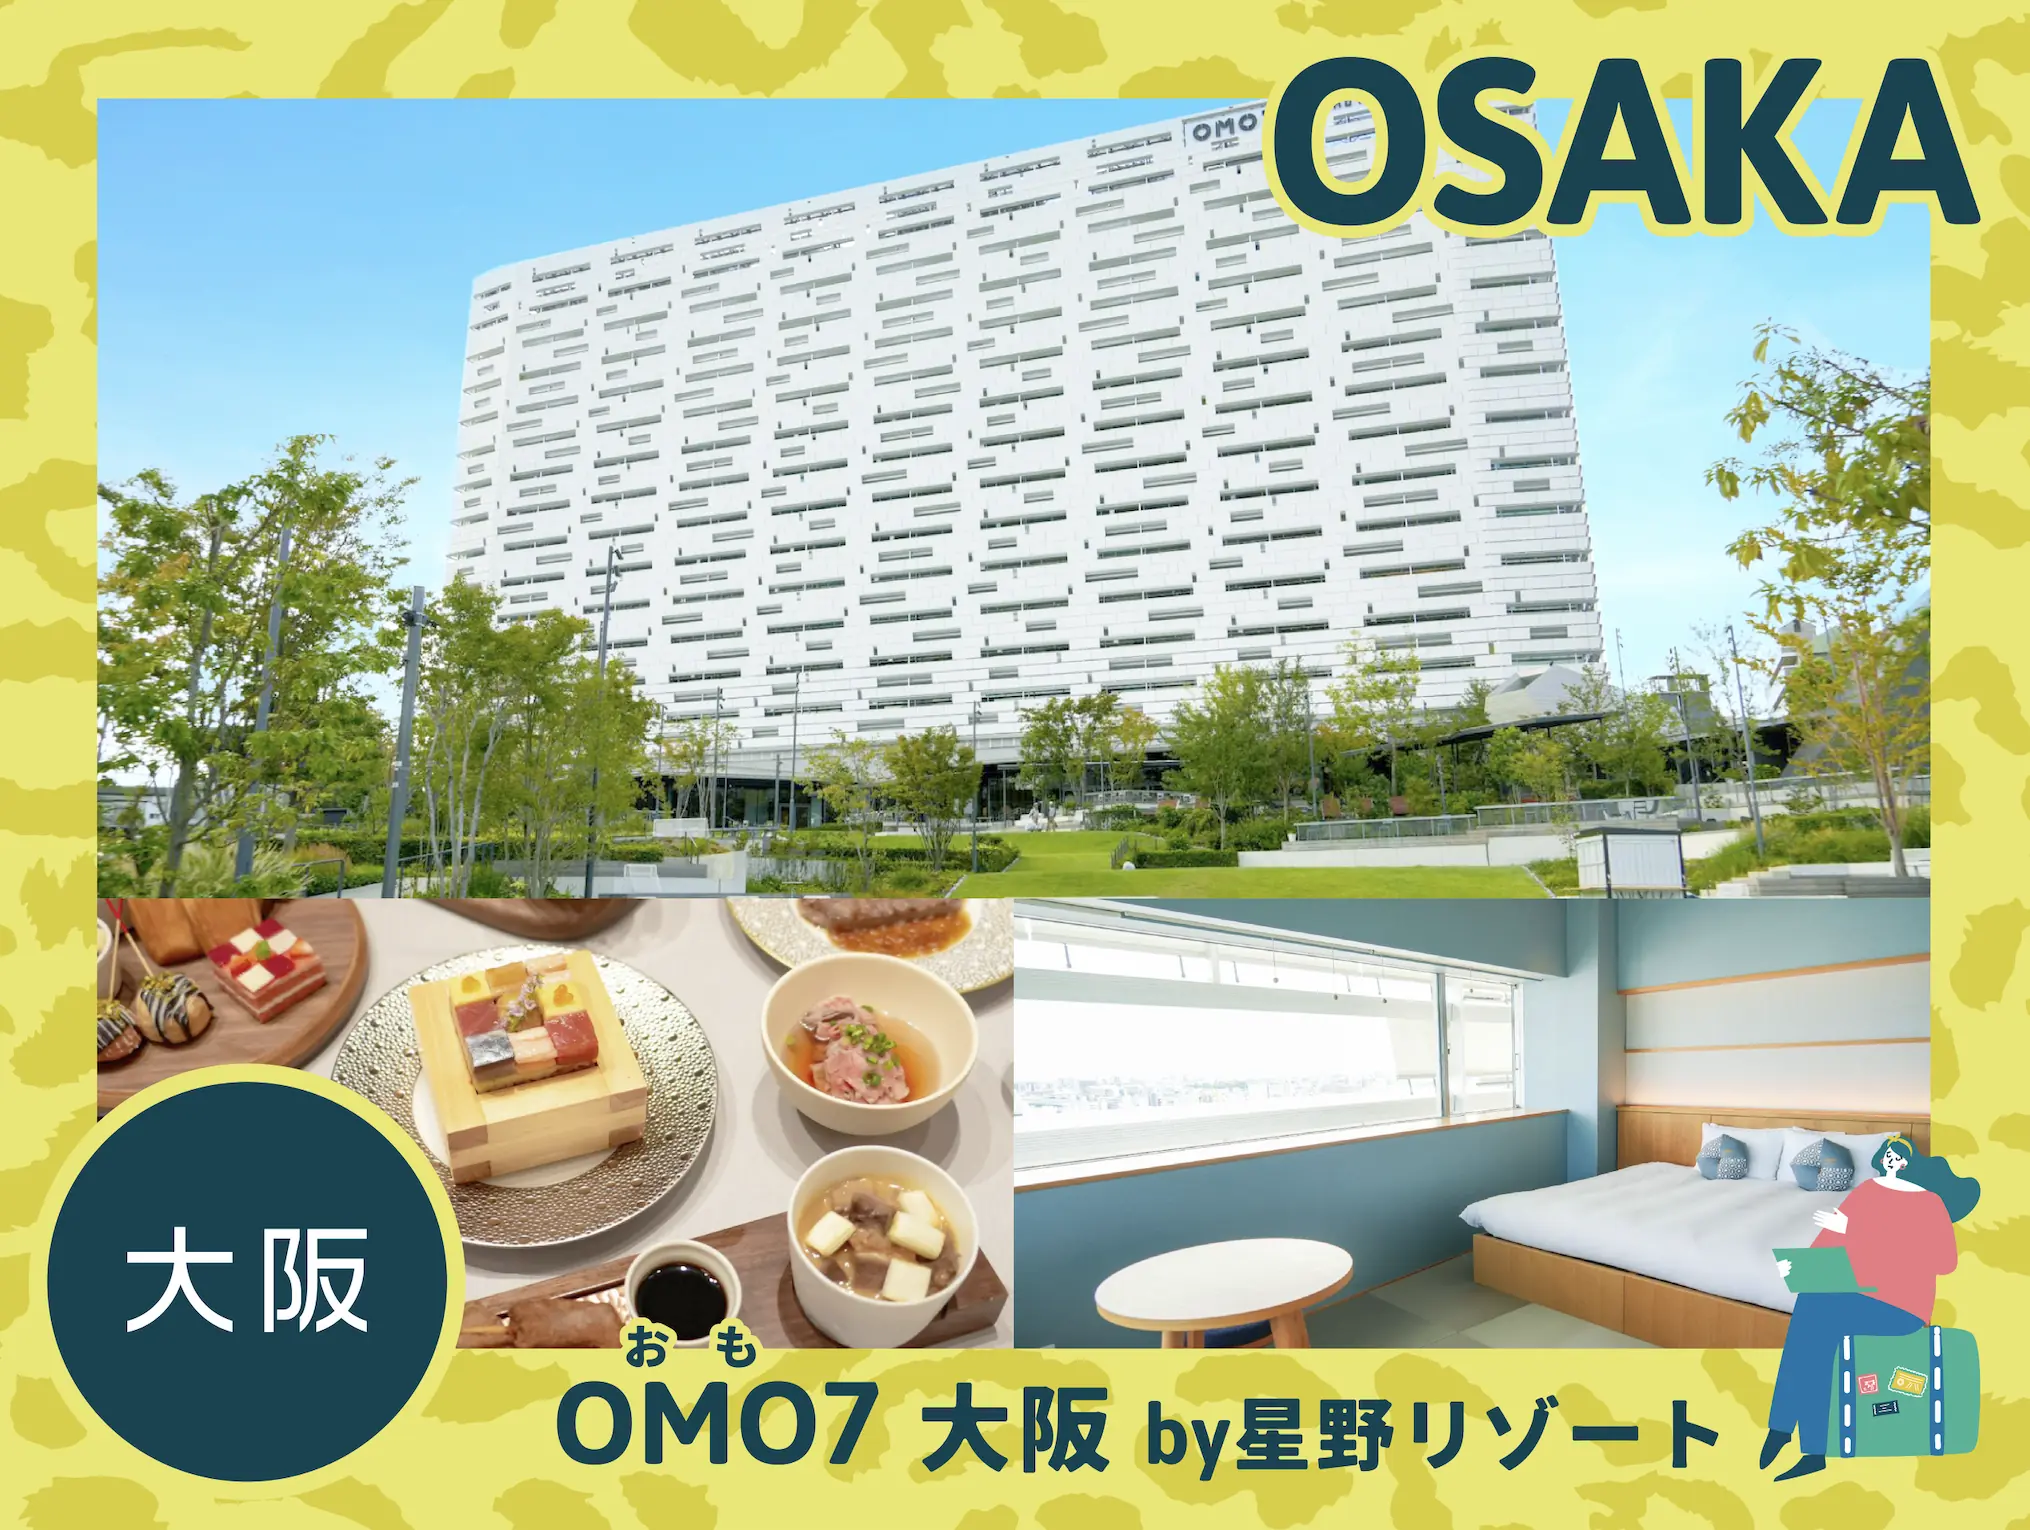 【新今宫】 大阪旅行变得更加有趣!                        “OMO7大阪（by星野度假村）” 